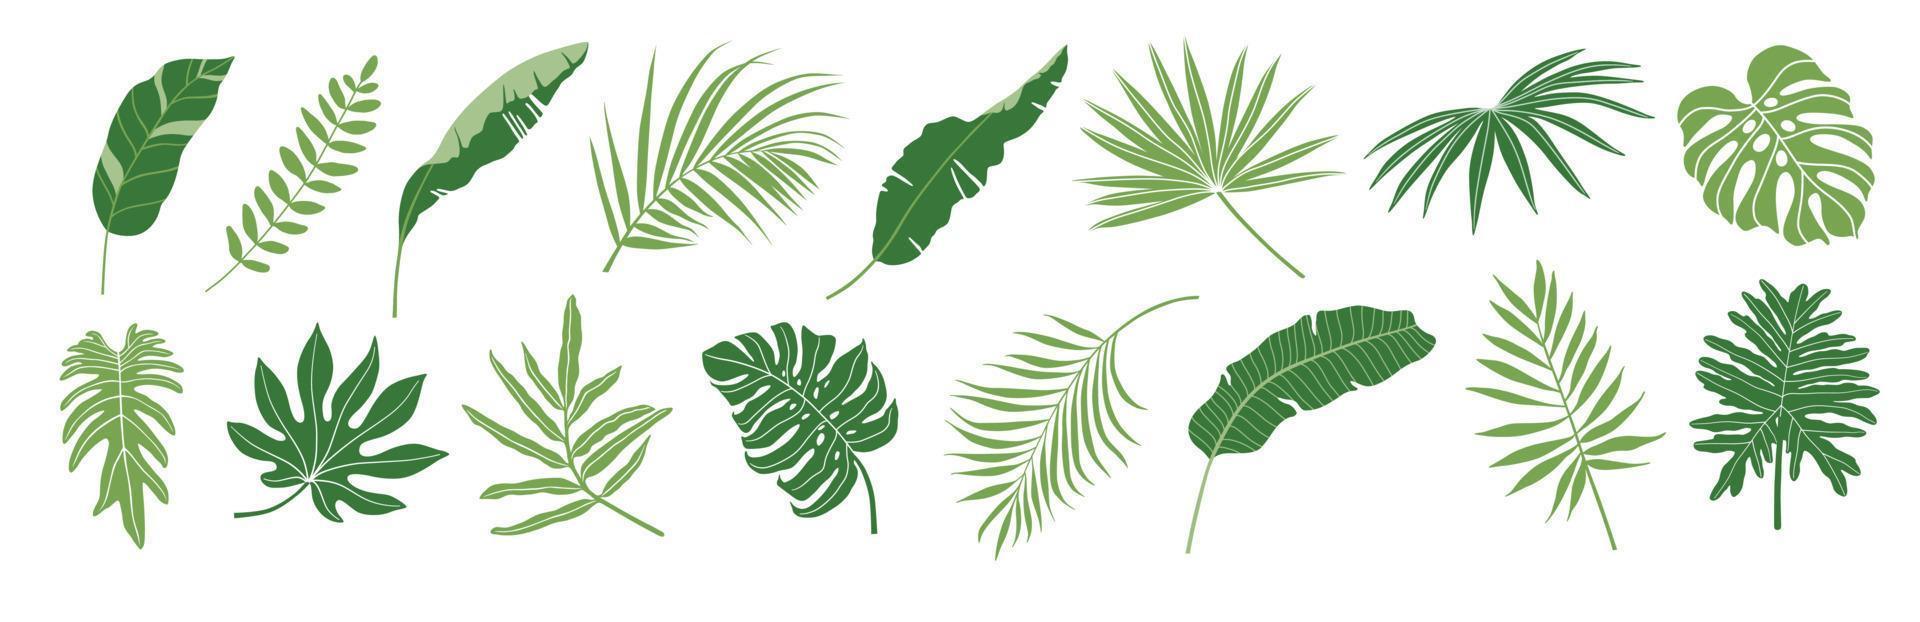 tropical hojas vector colocar. palma hoja, plátano hojas, Coco hoja, monstruo, helecho y selva hojas